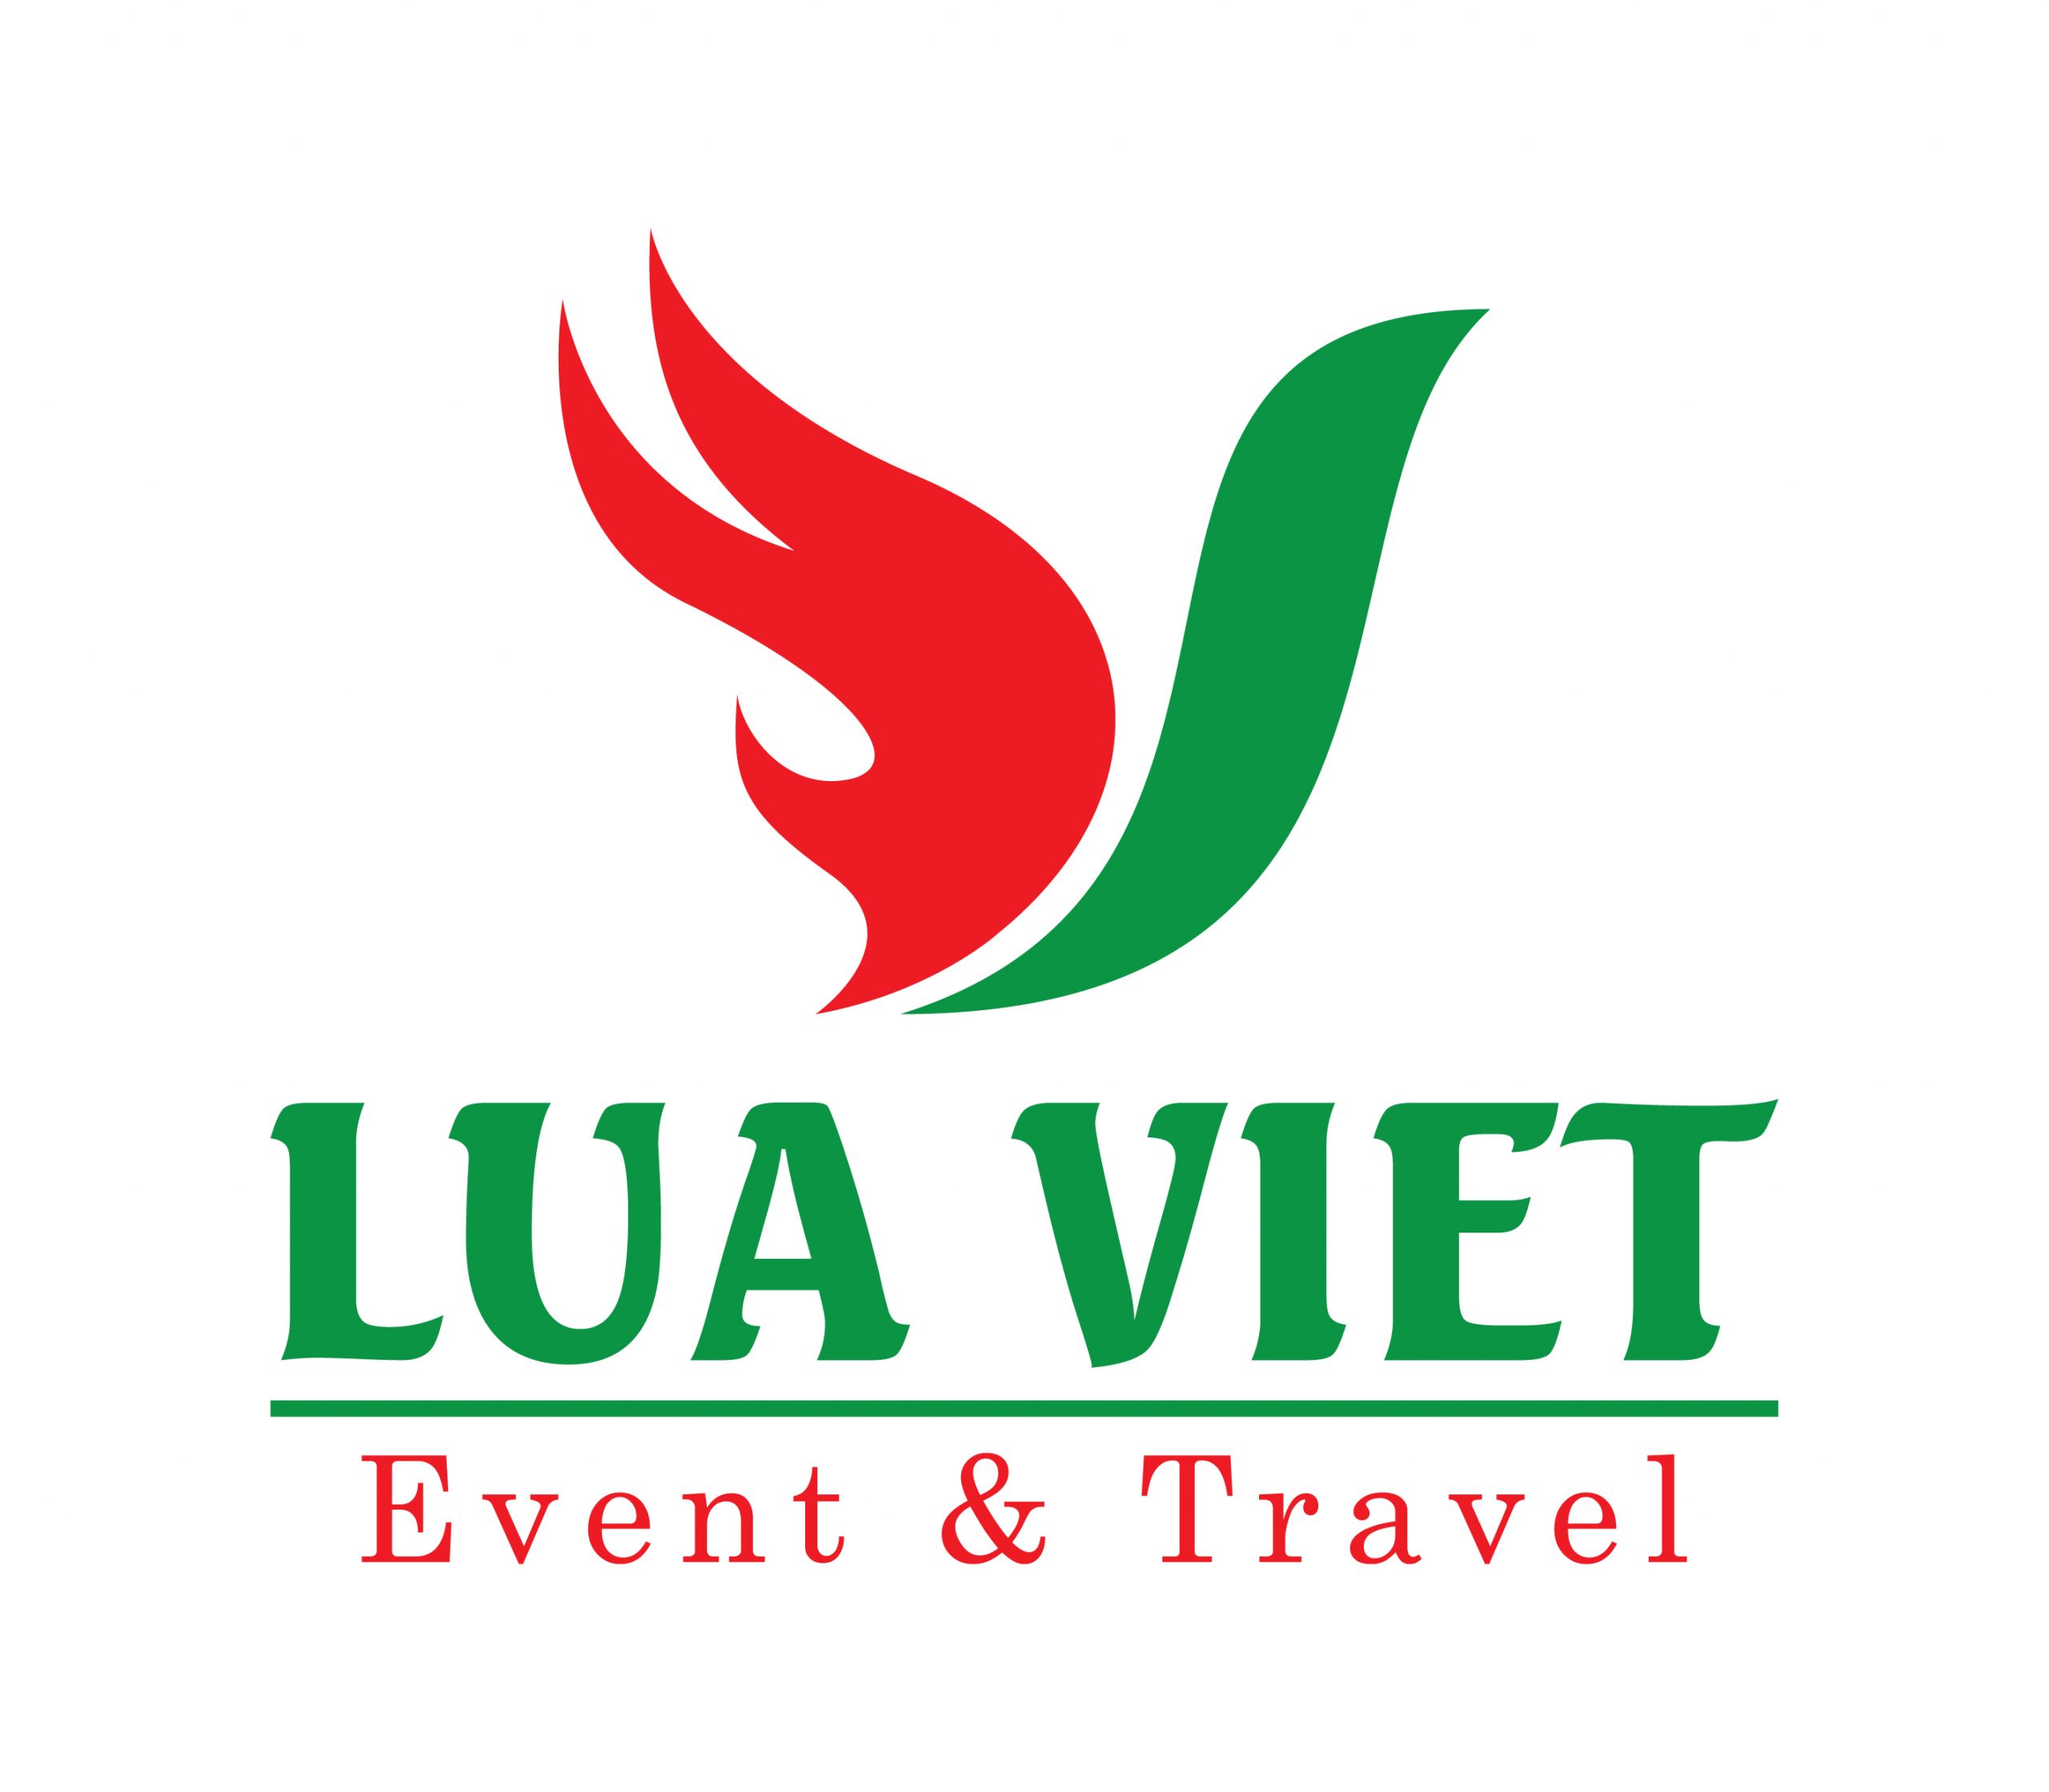 Lua-Viet-Logo-file-goc-chuan-mau-01